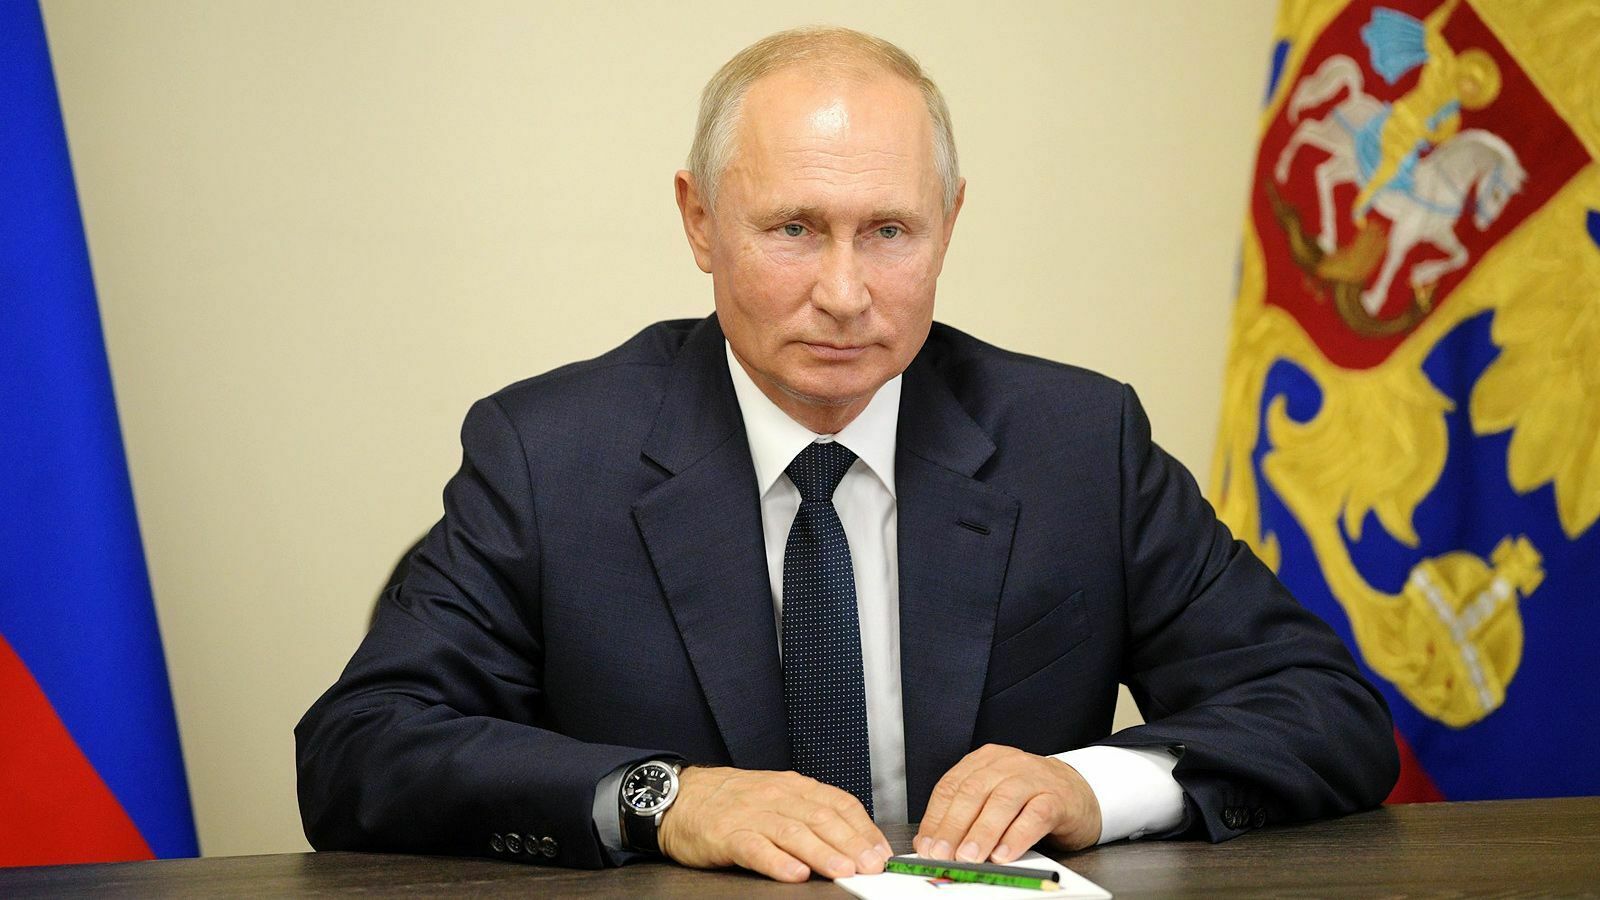 Владимир Путин поддержал идею об исполнении гимна в школах